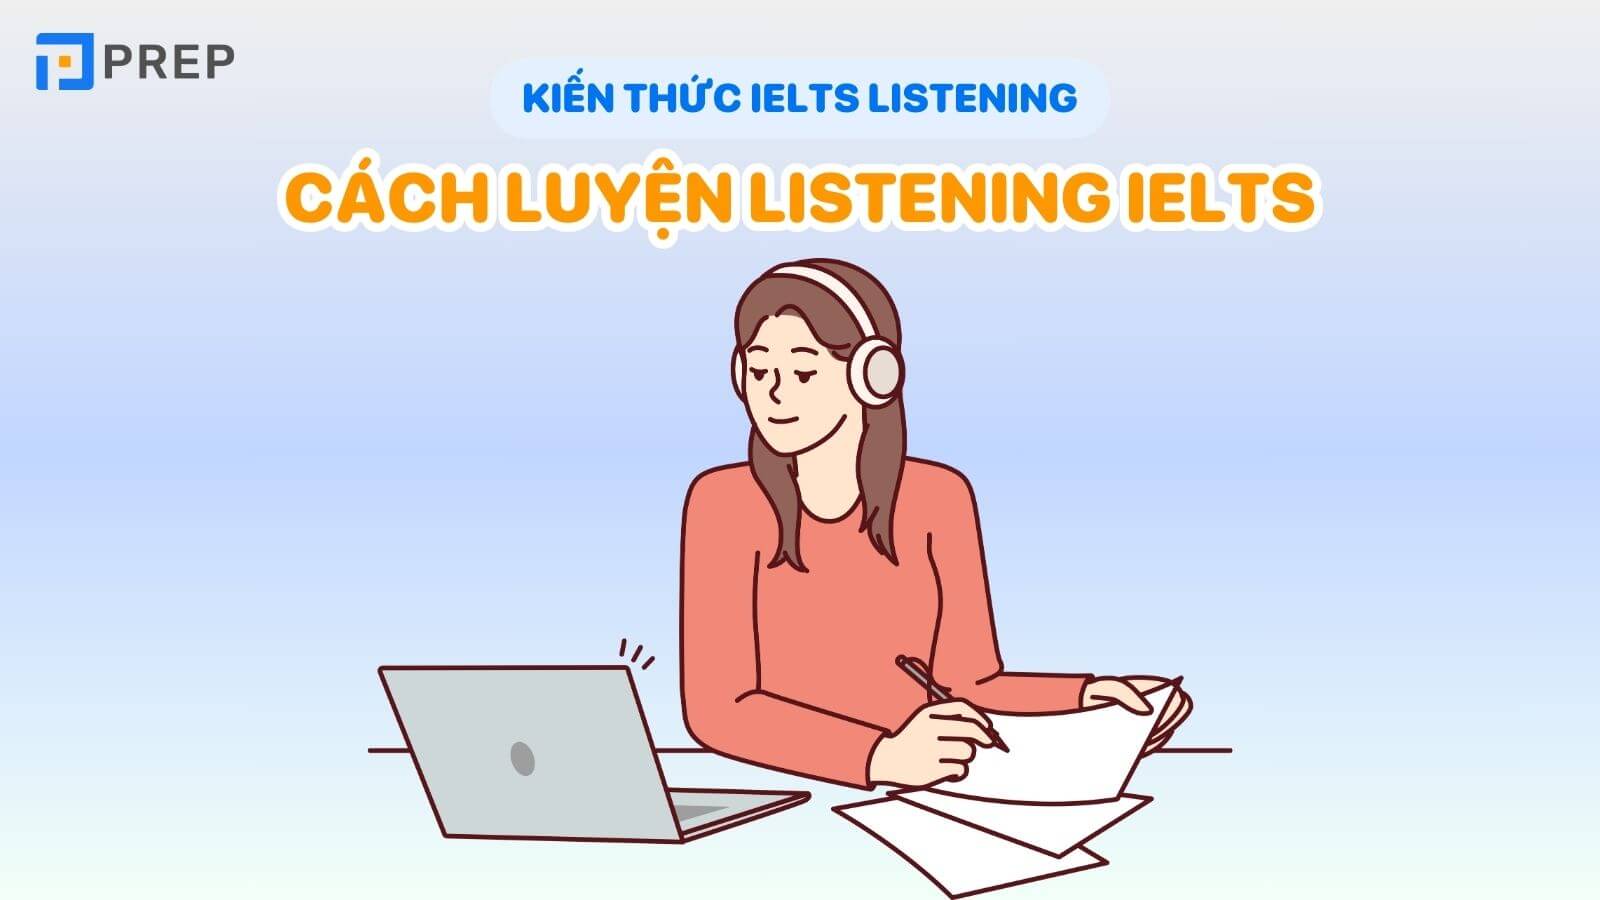 cach-luyen-listening-ielts.jpg